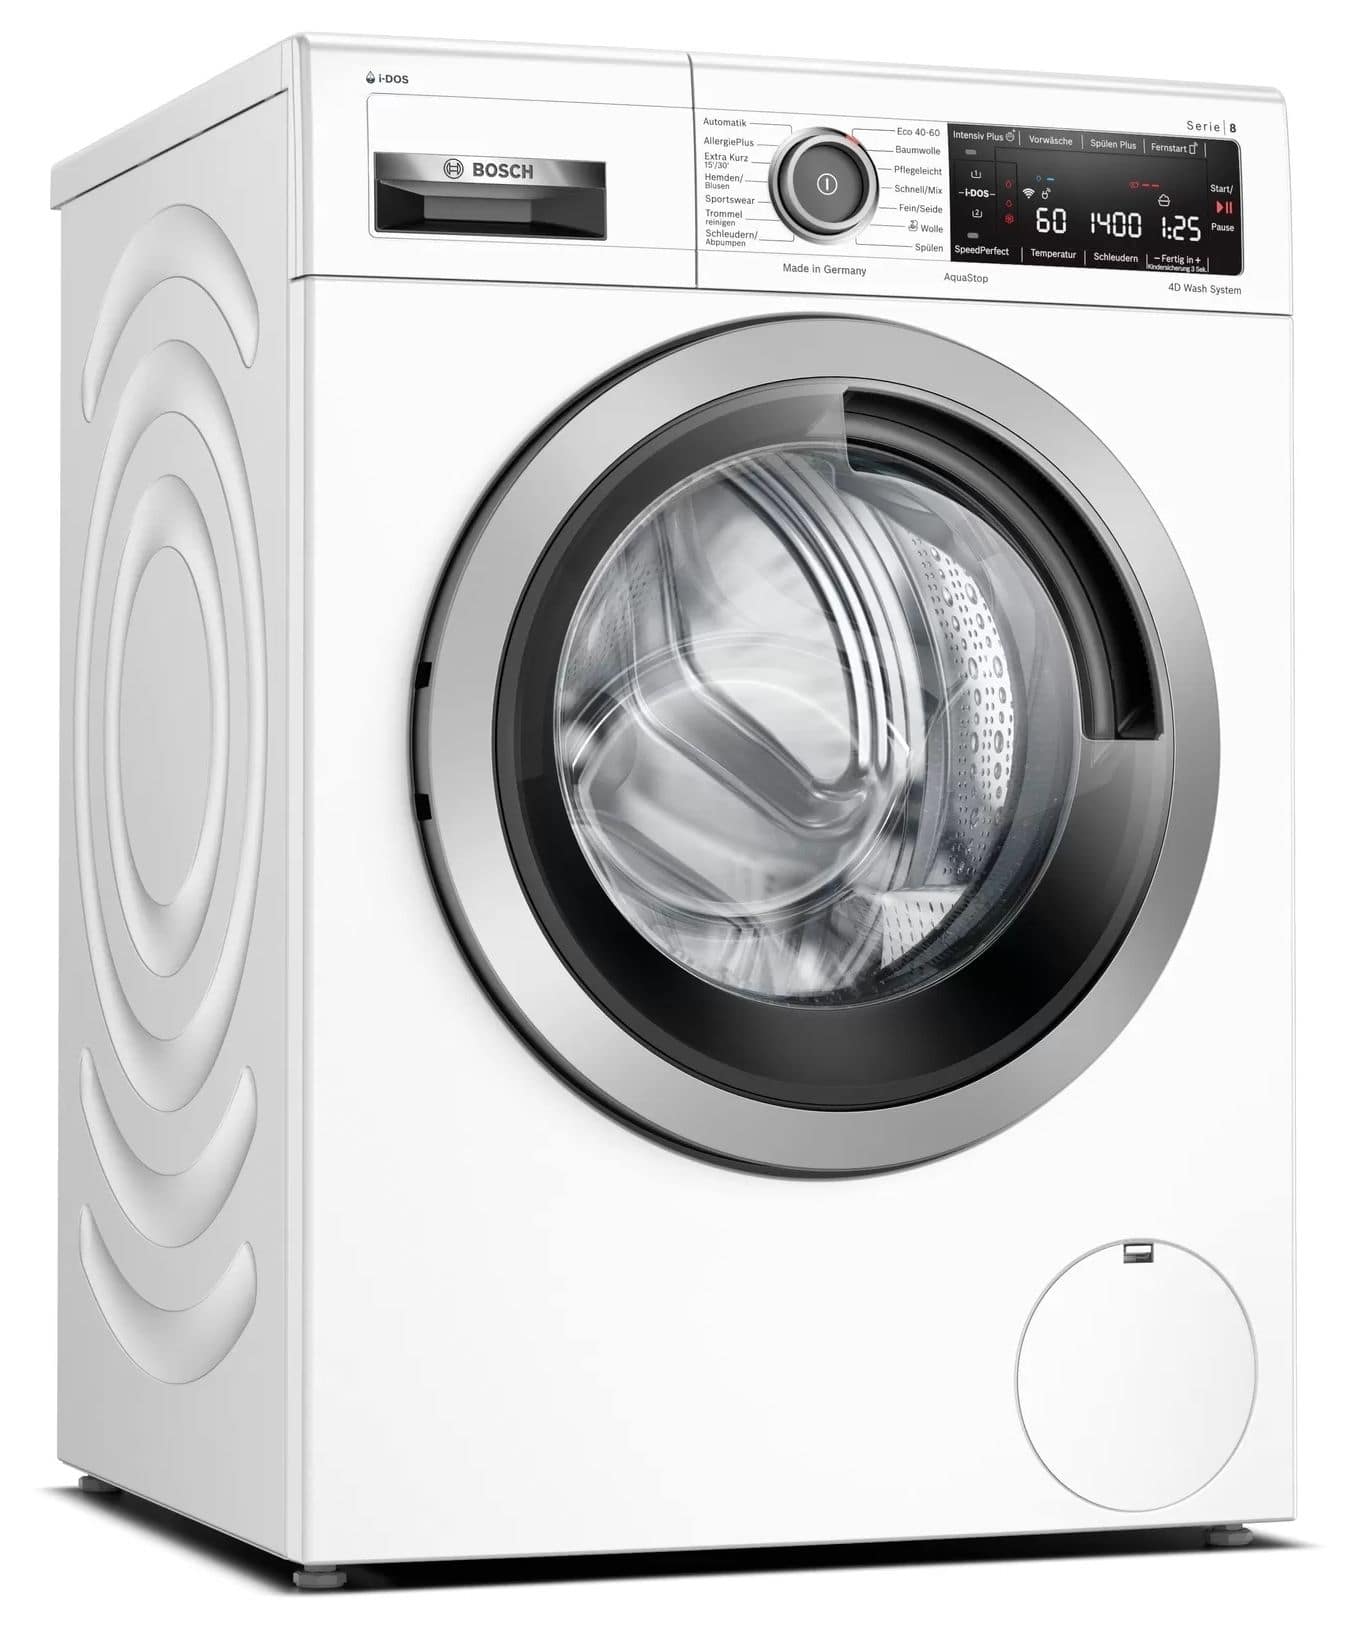 Waschmaschine EEK: expert kg A 9 AutoClean aquaStop von Serie 8 Bosch WAV28K43 1400 Frontlader U/min Technomarkt